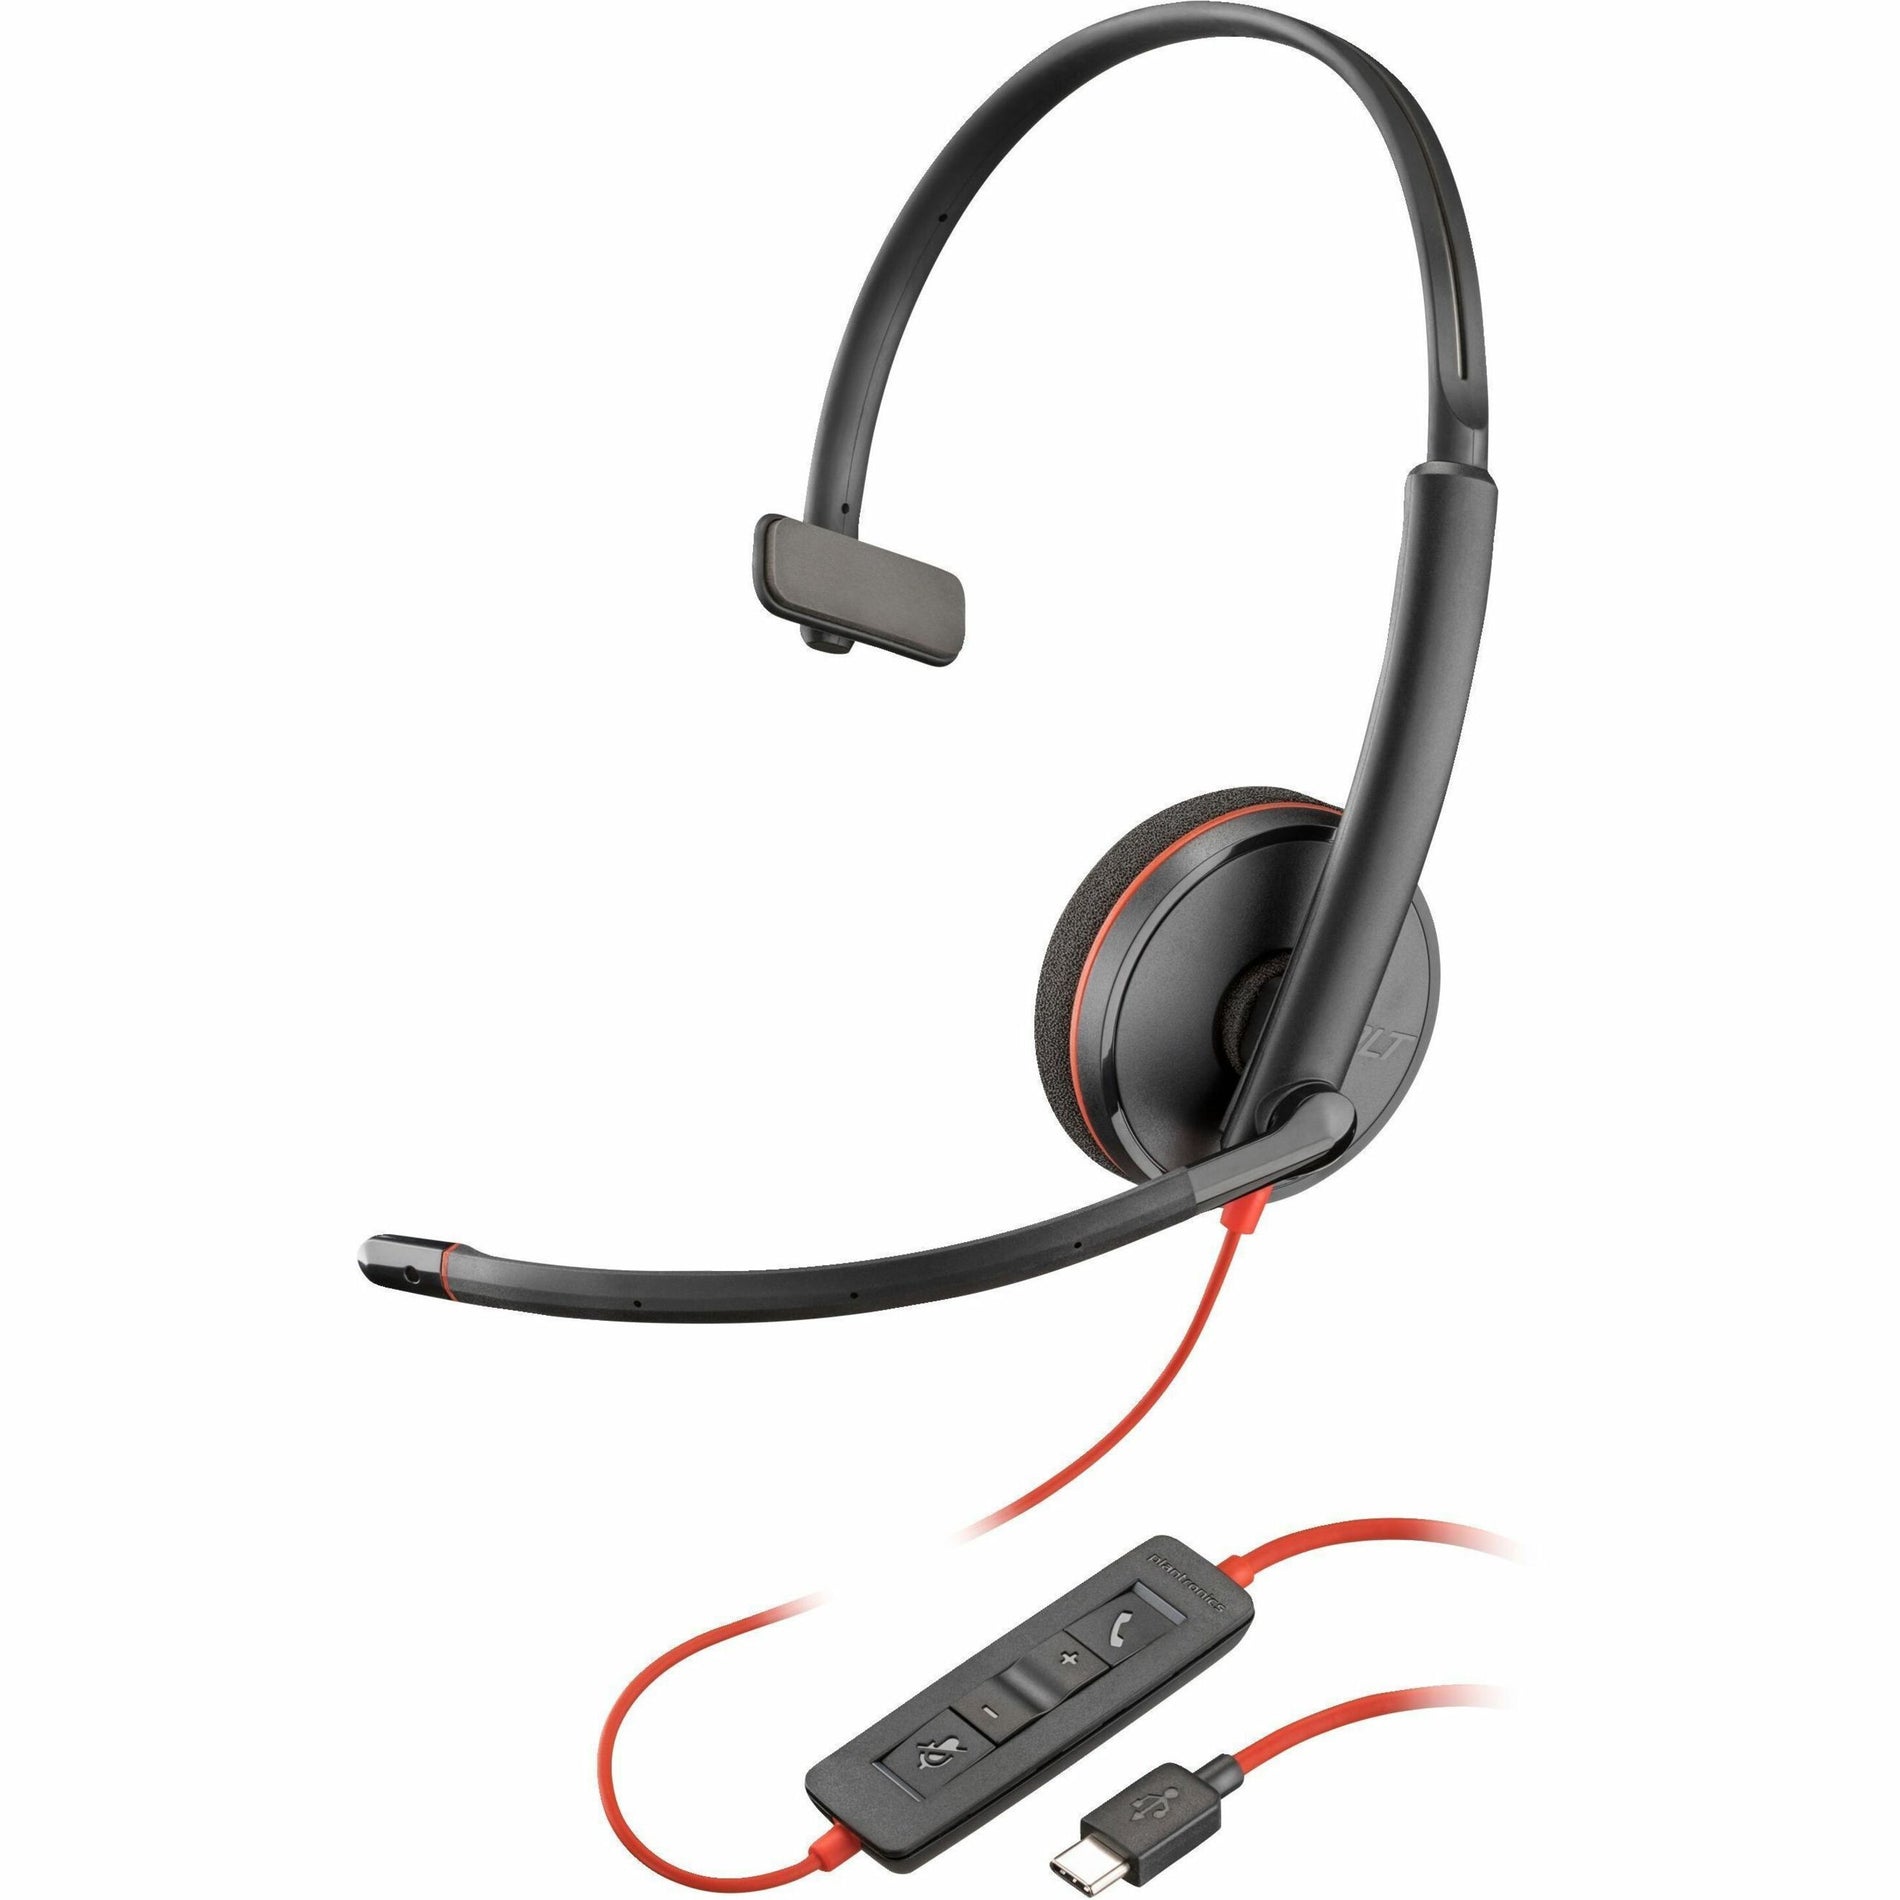 Preto 8X214AA Fone de ouvido USB-C Blackwire 3210 monoaural + Adaptador USB-C/A Design sobre a orelha Cancelamento de ruído